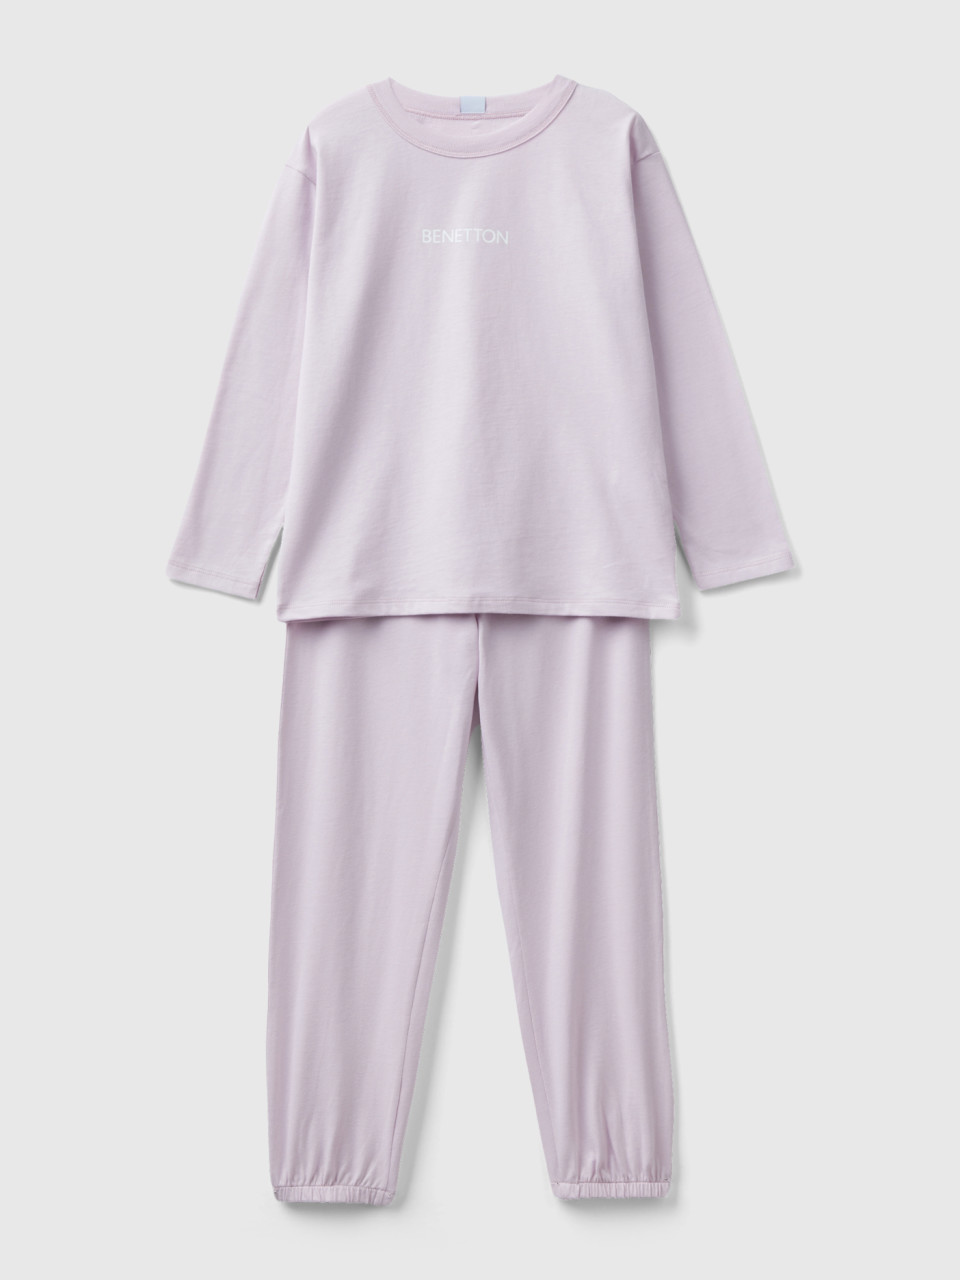 Benetton, Pyjama Aus 100% Baumwolle Mit Logo, Flieder, female